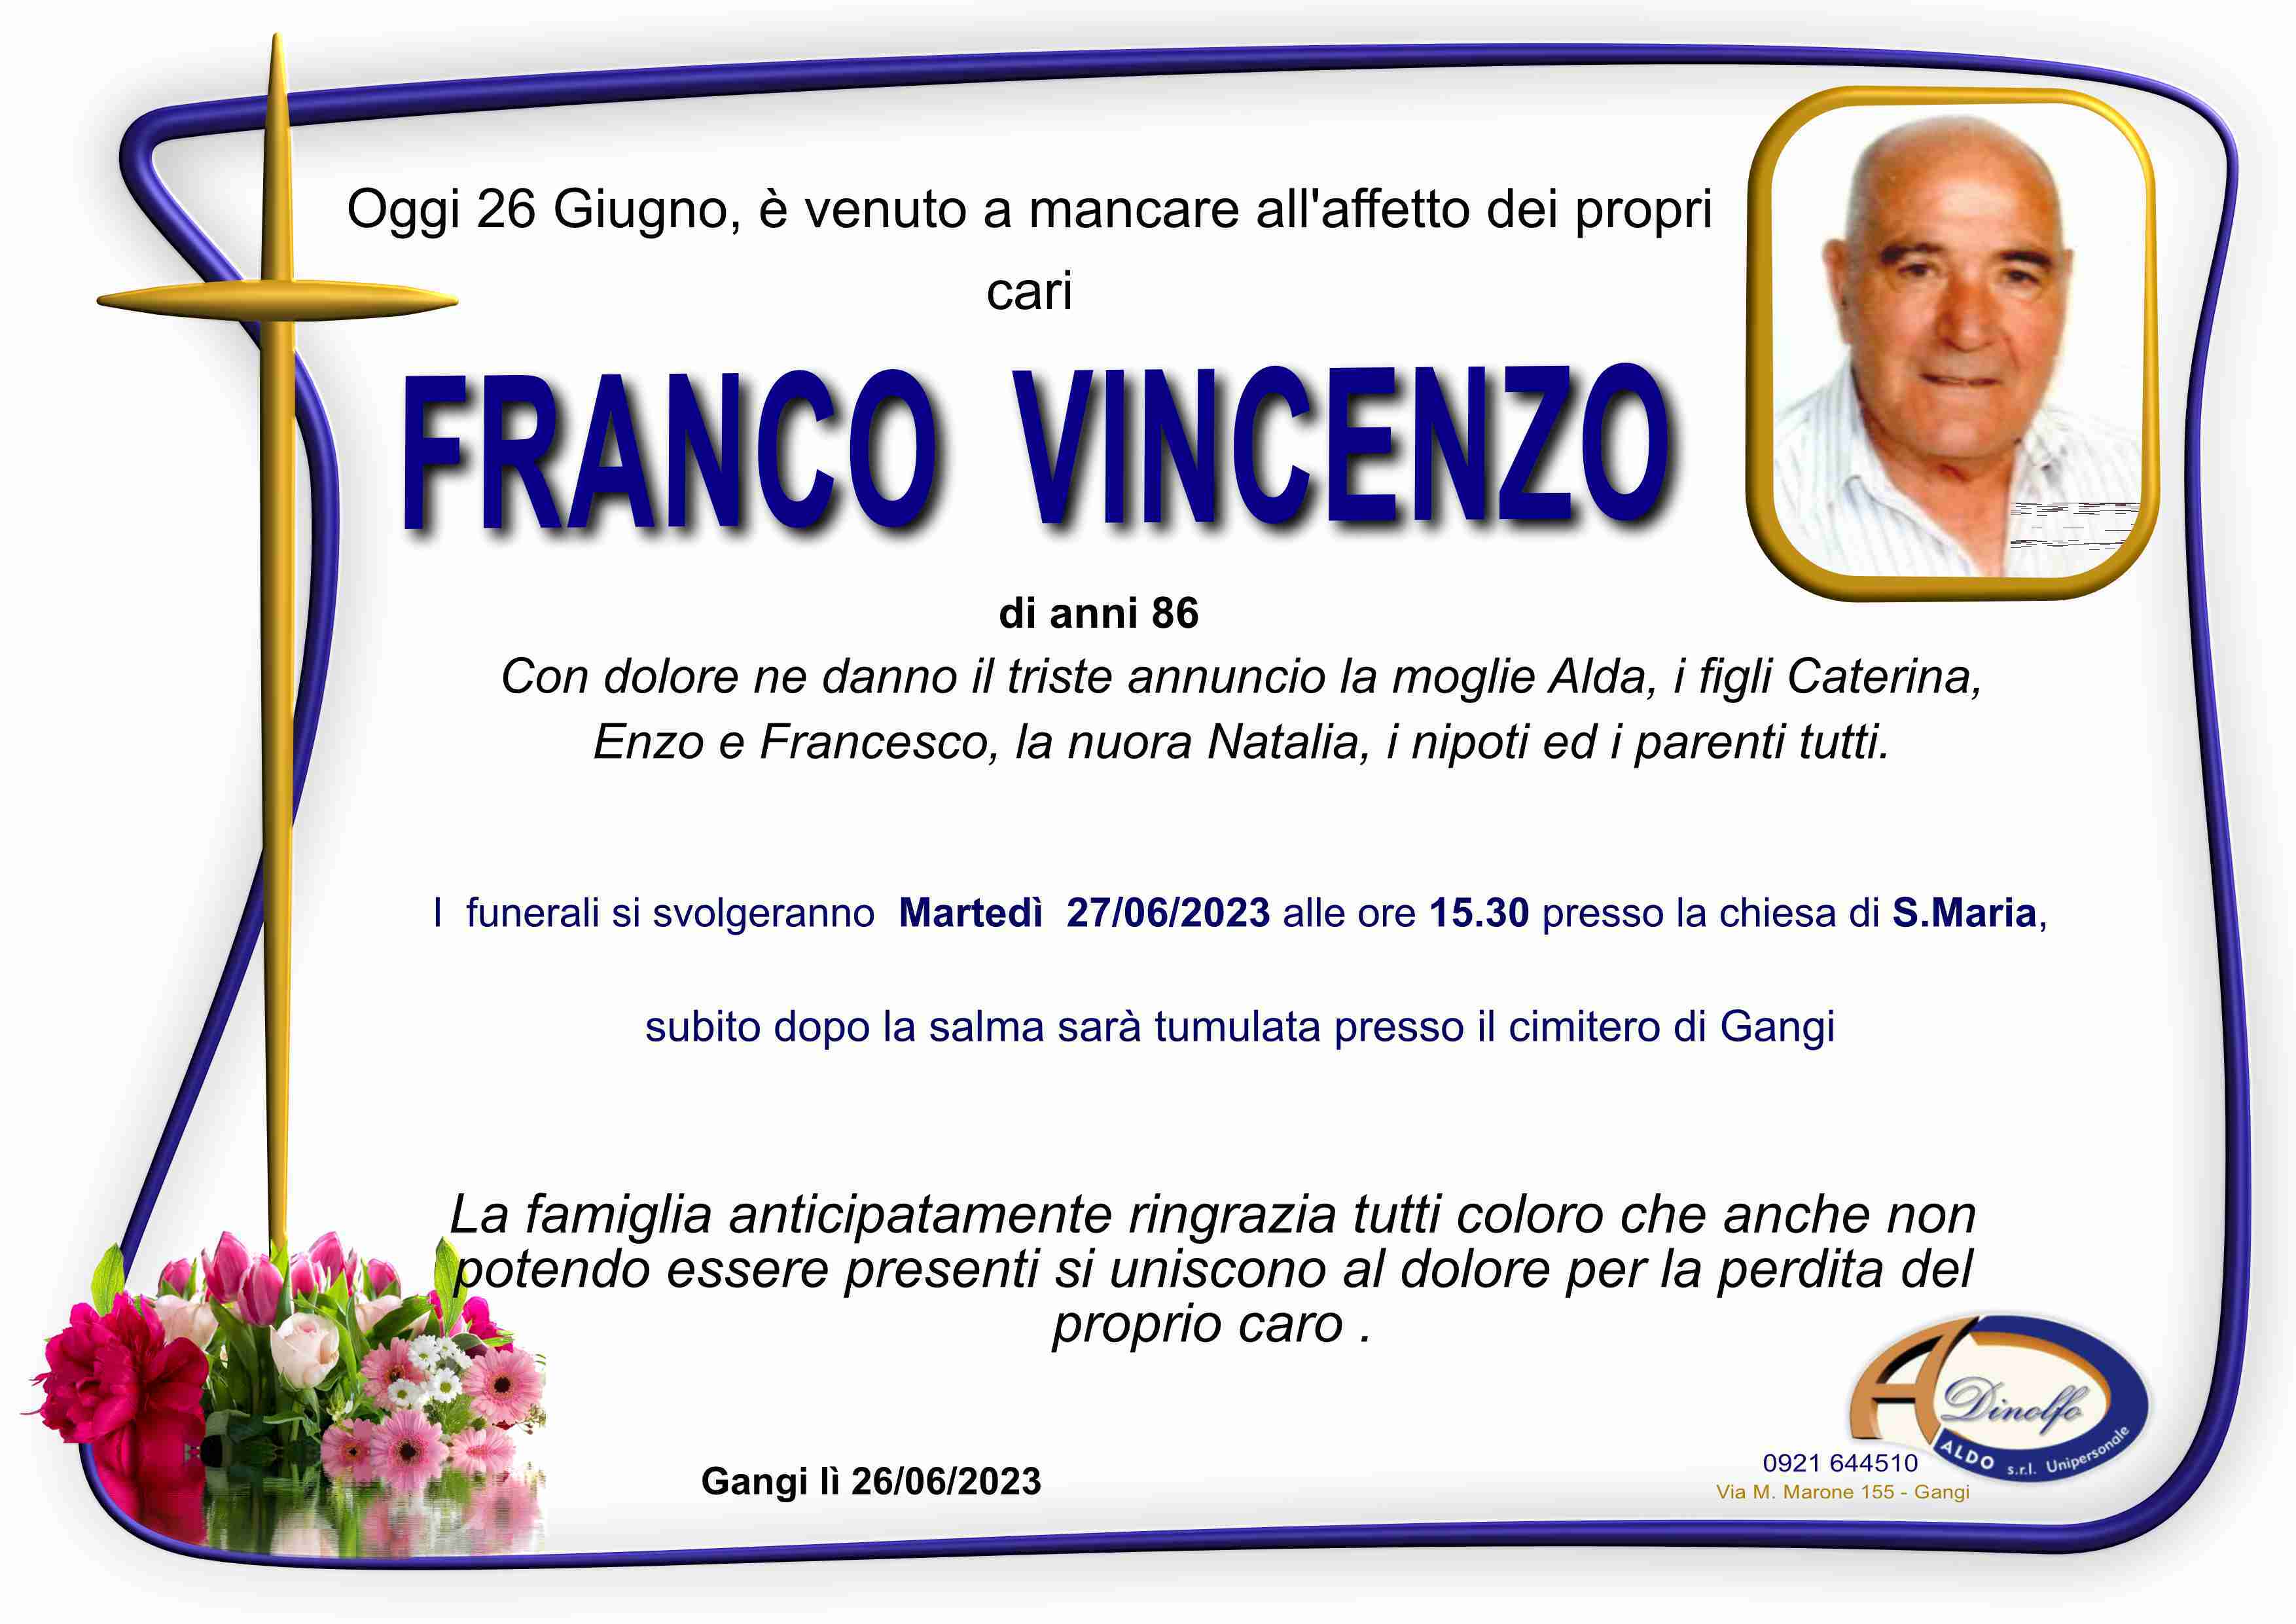 Vincenzo Franco